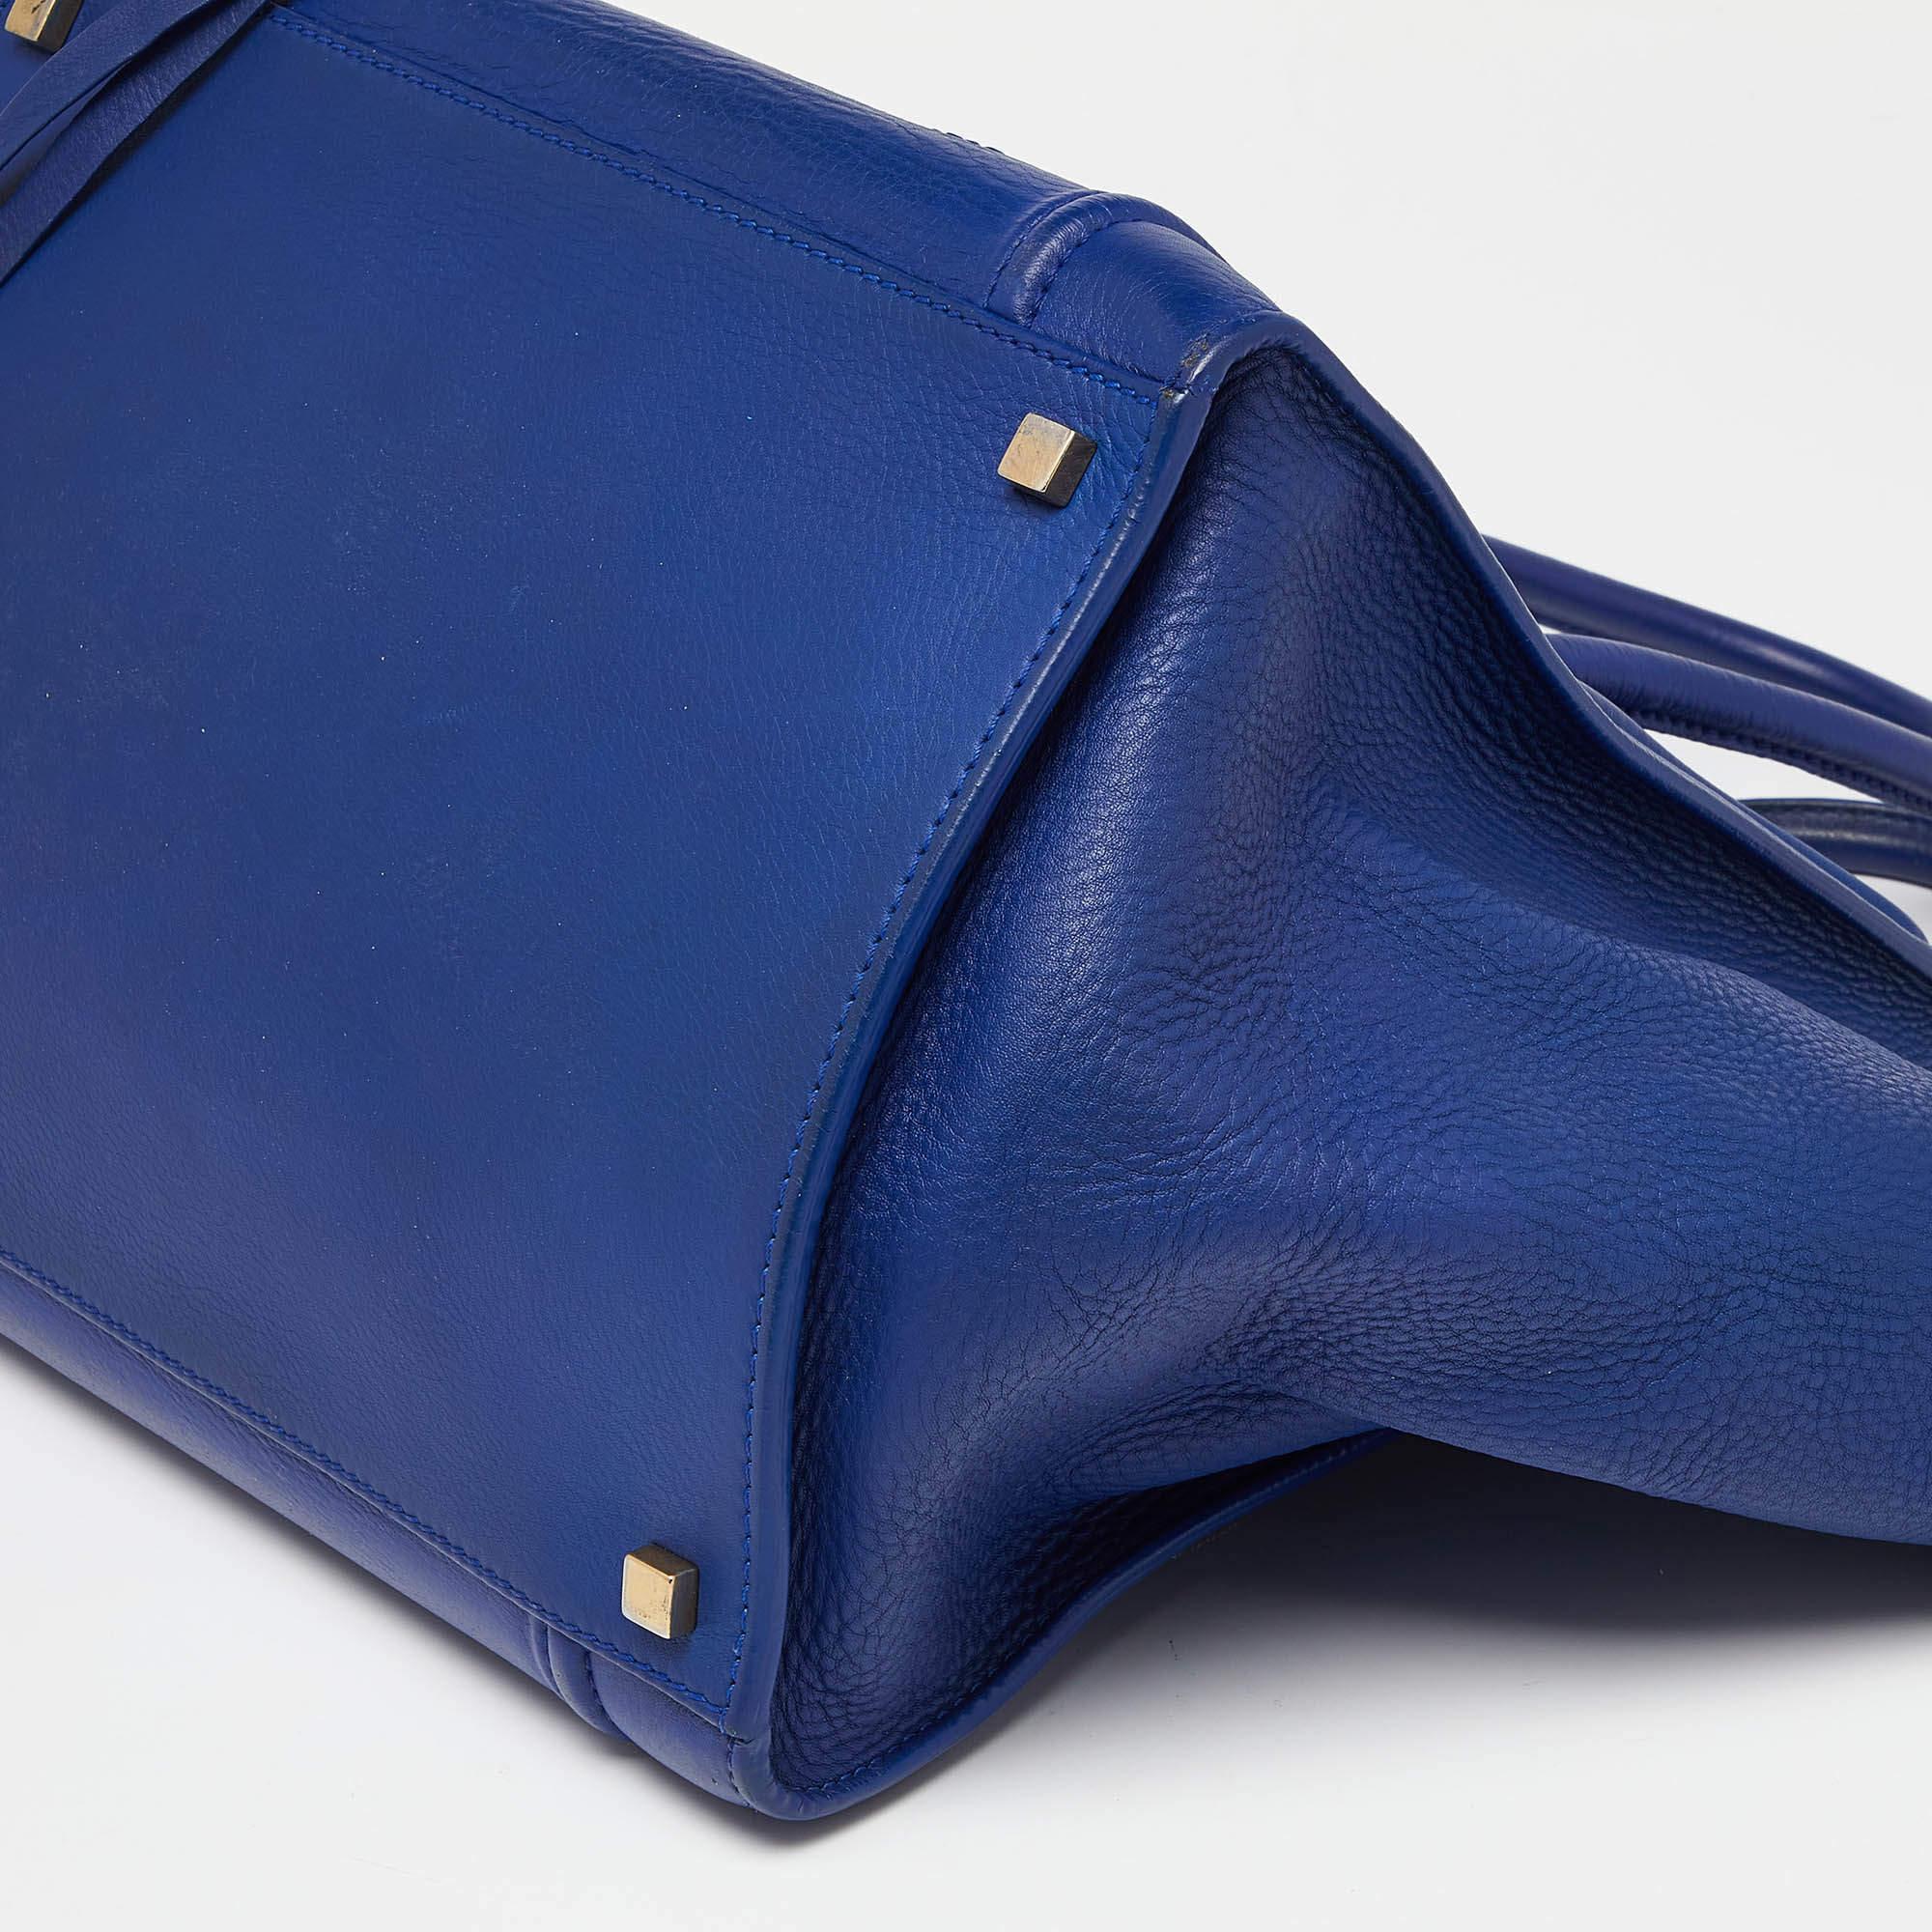 Celine Blue Leather Medium Phantom Luggage Tote 3